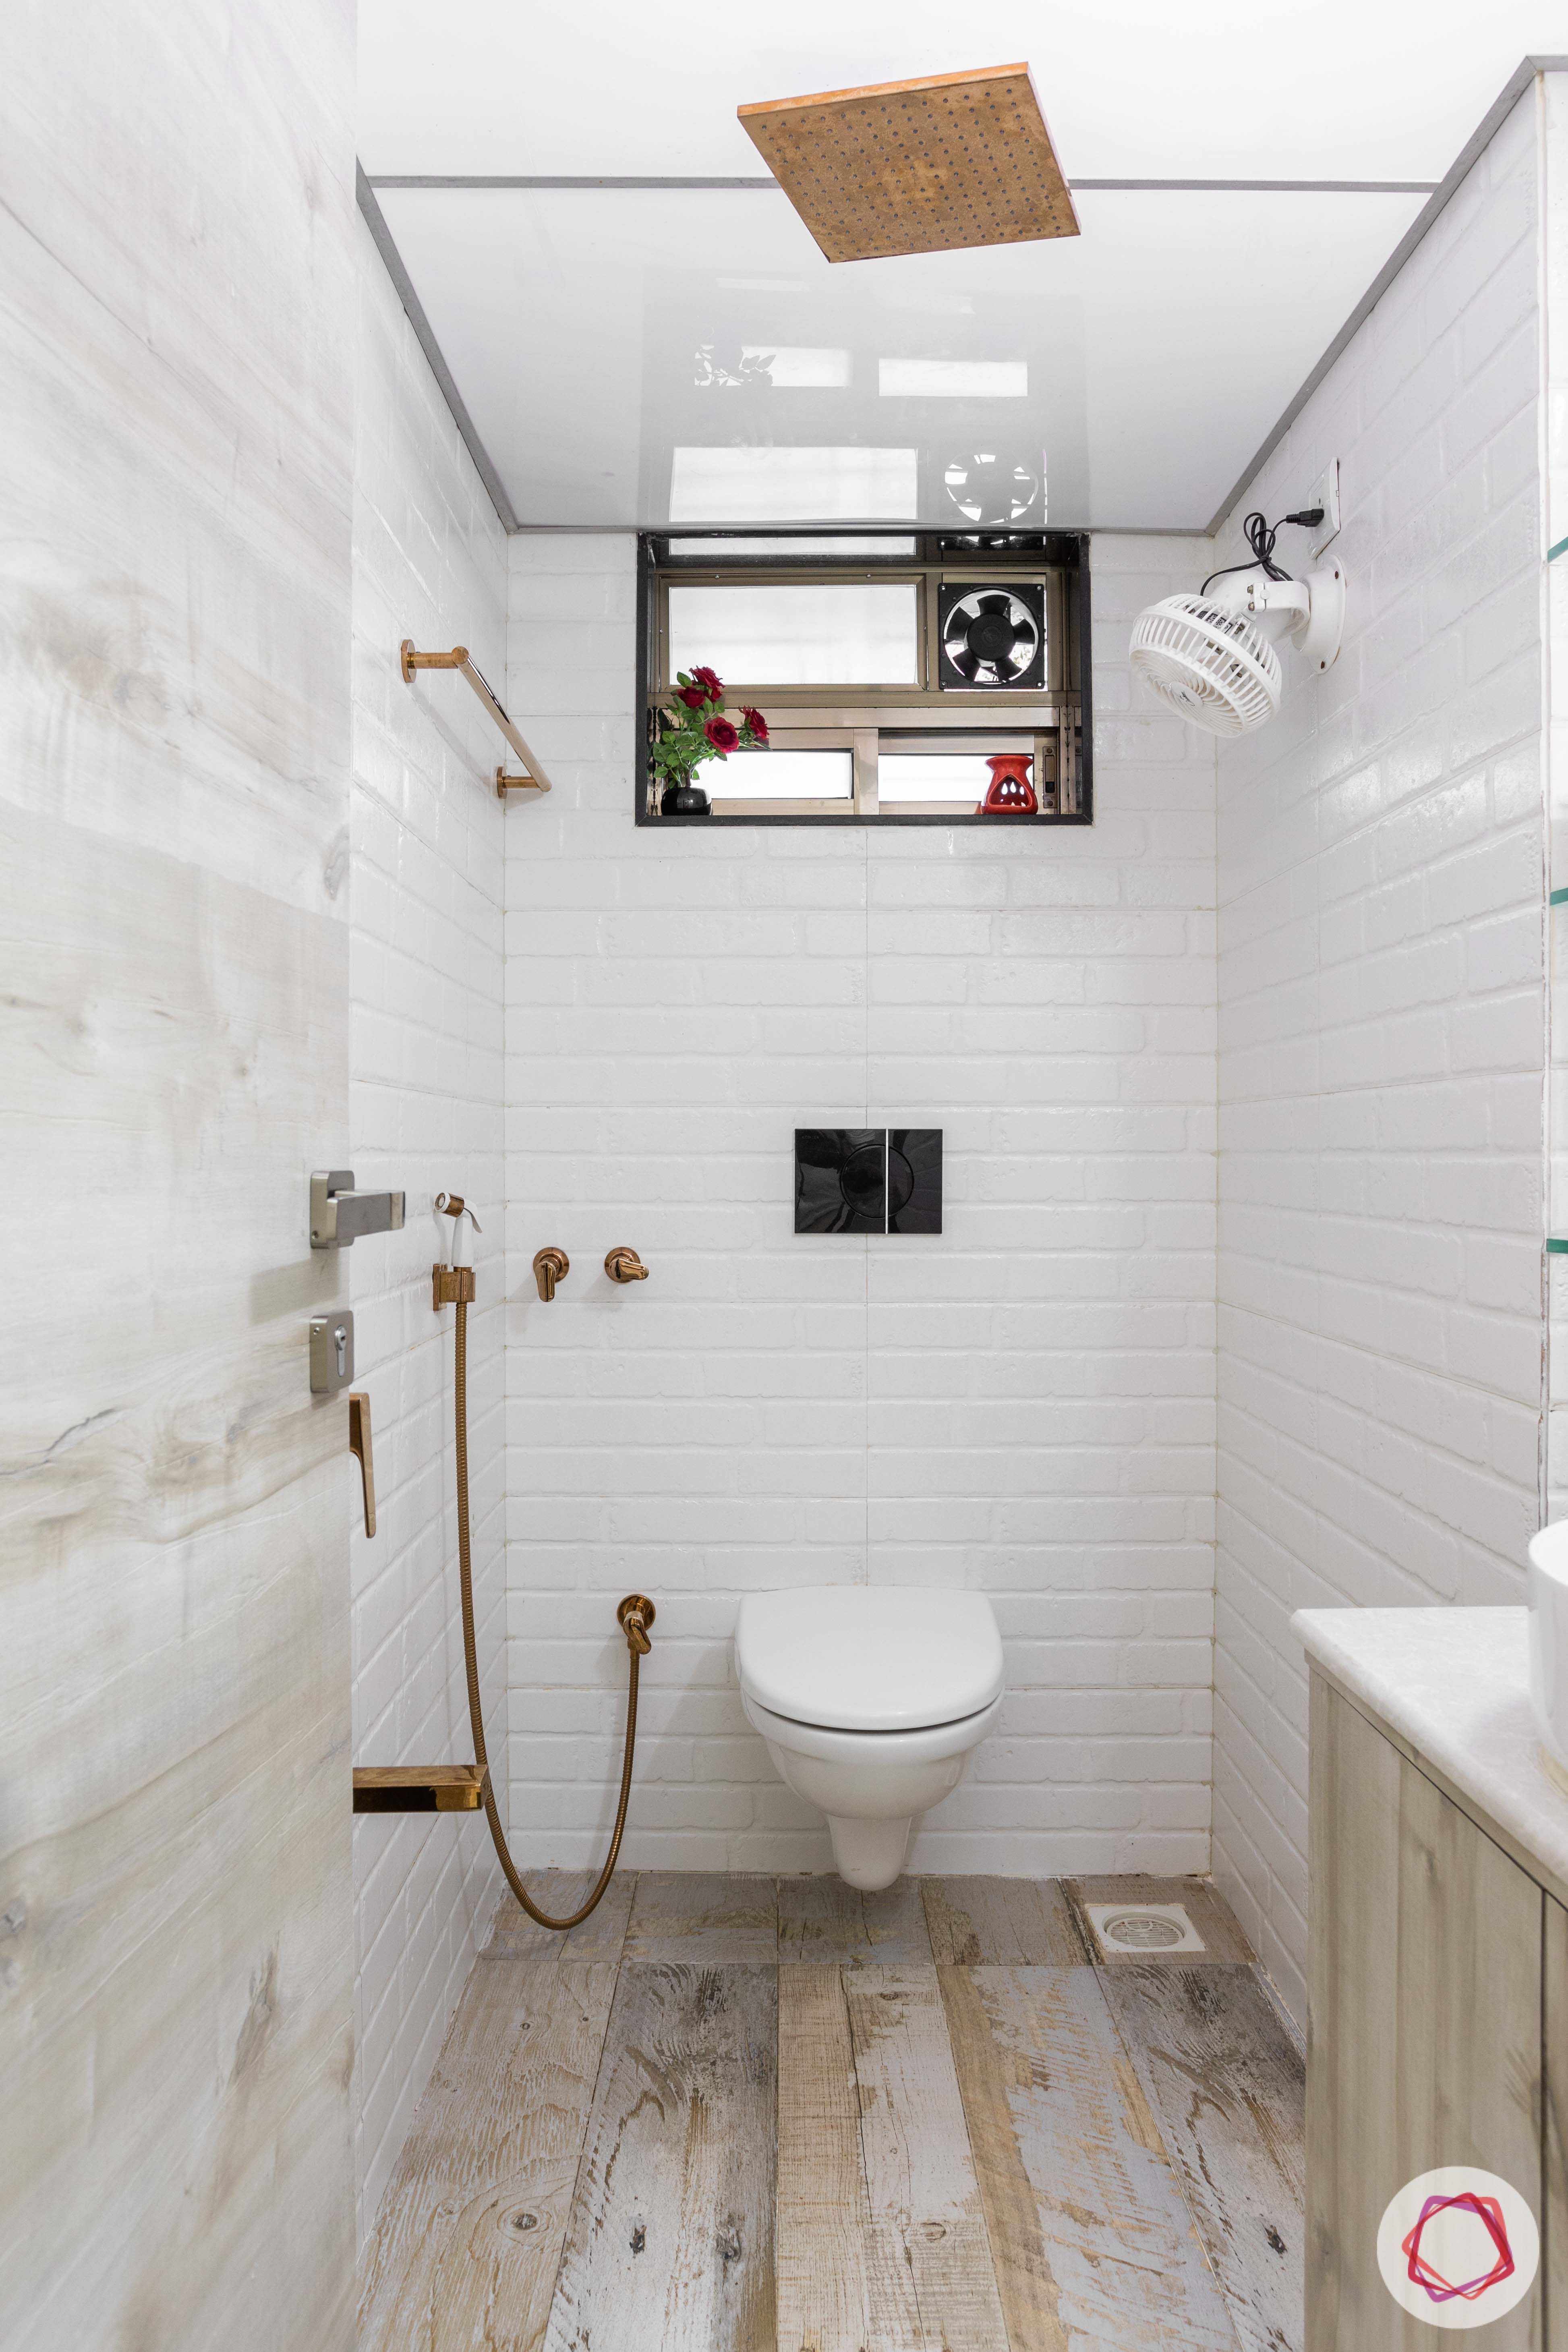 interior design company in mumbai-bathroom-ceiling design-sink